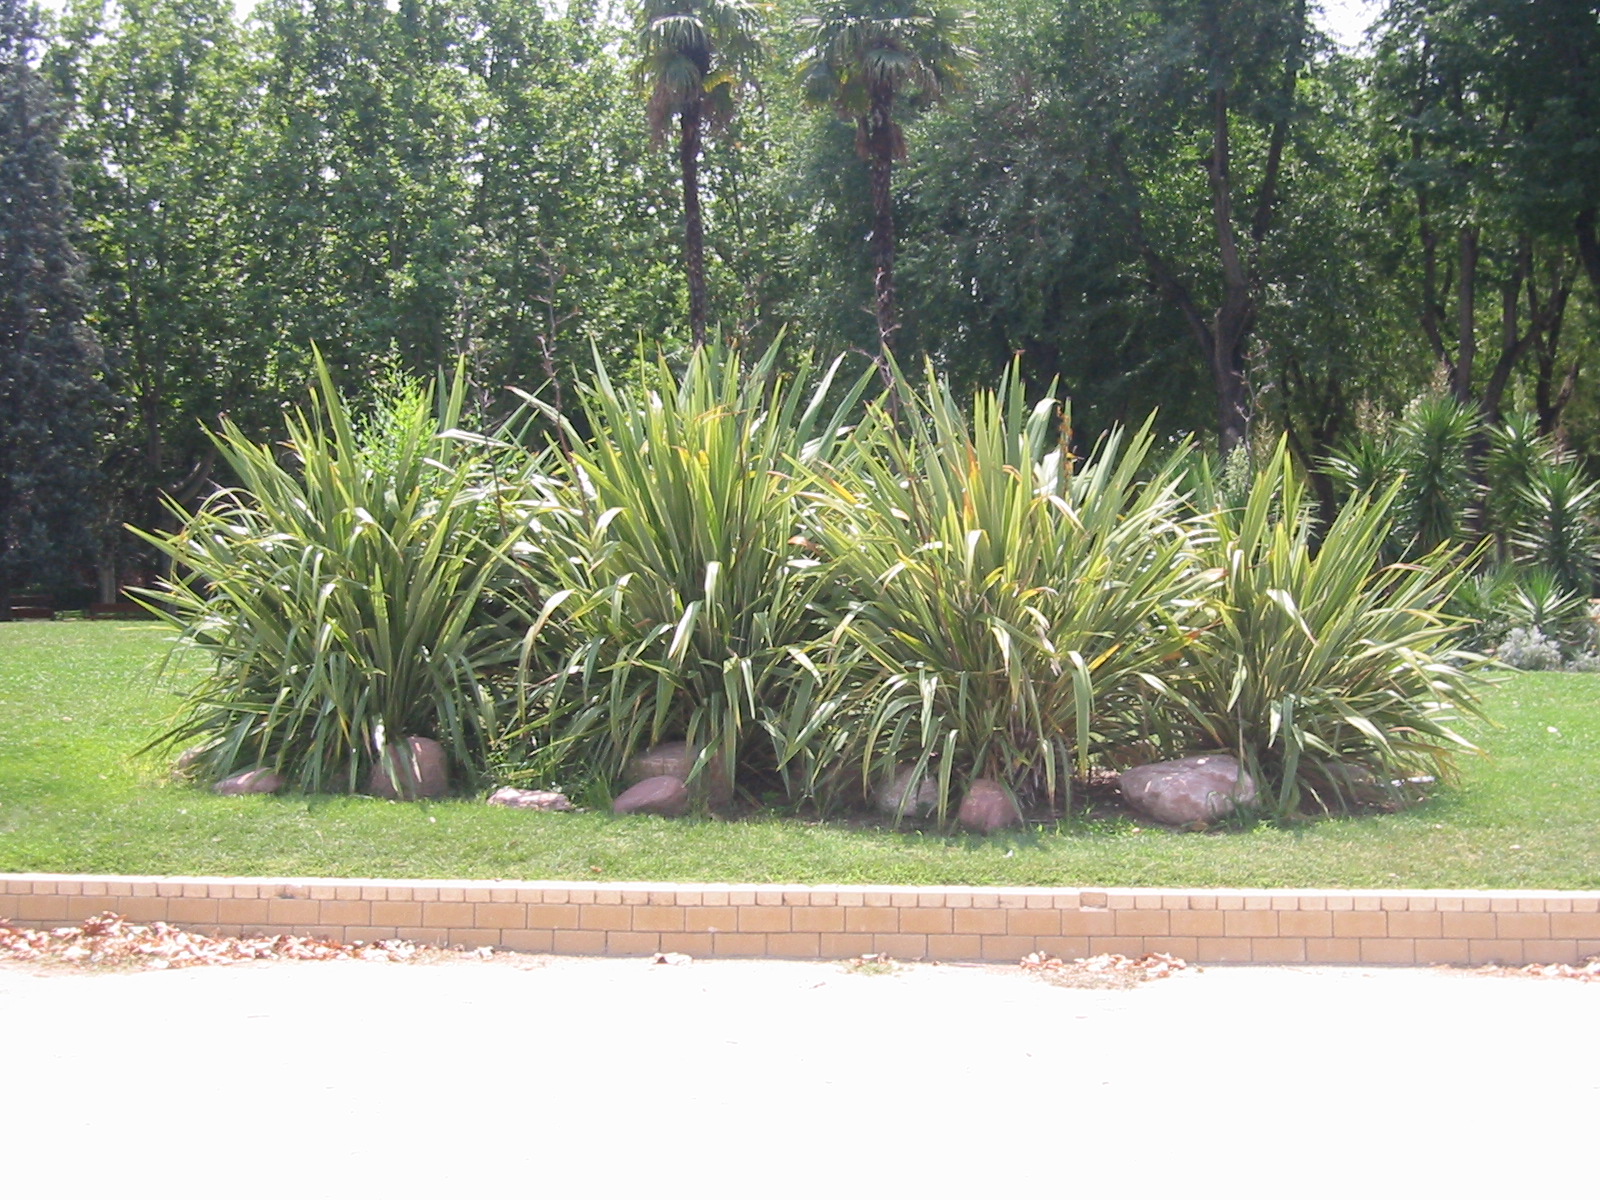 michiel de boer park fern plants decoration warm tropical